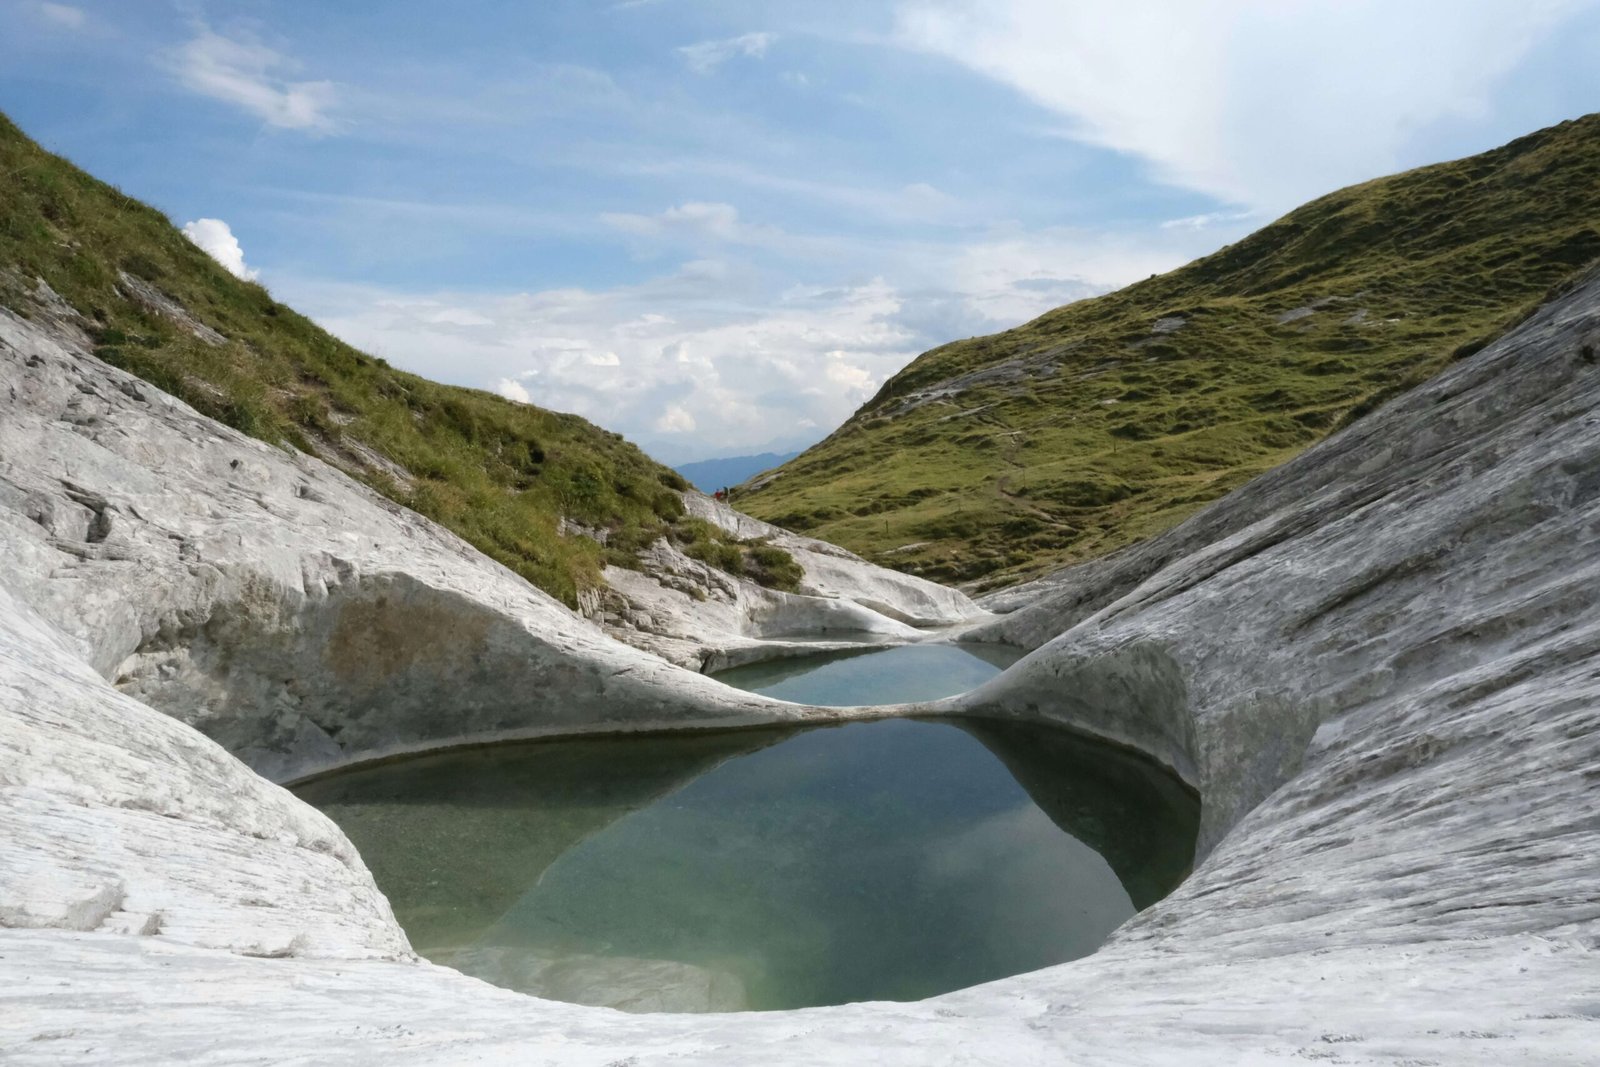 Gletschermullen, good places to go in Switzerland